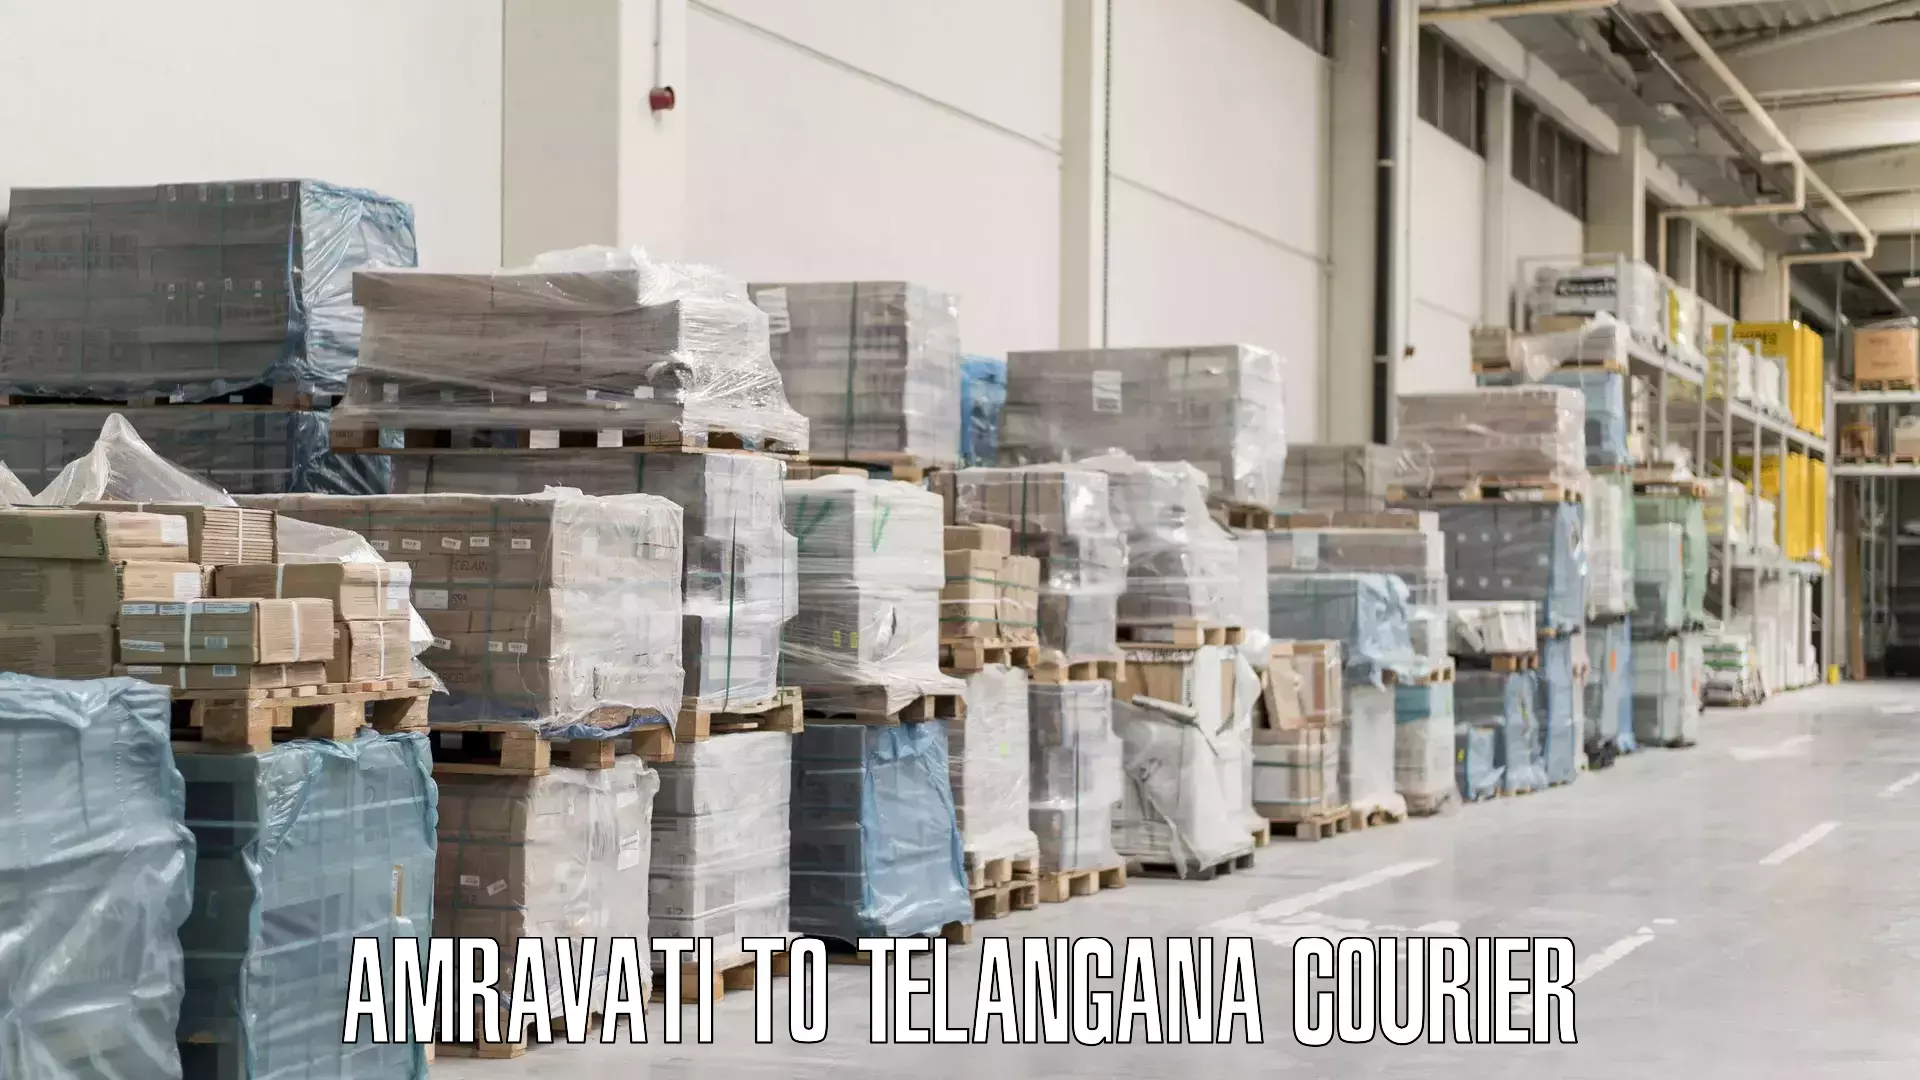 Luggage transport company Amravati to Telangana